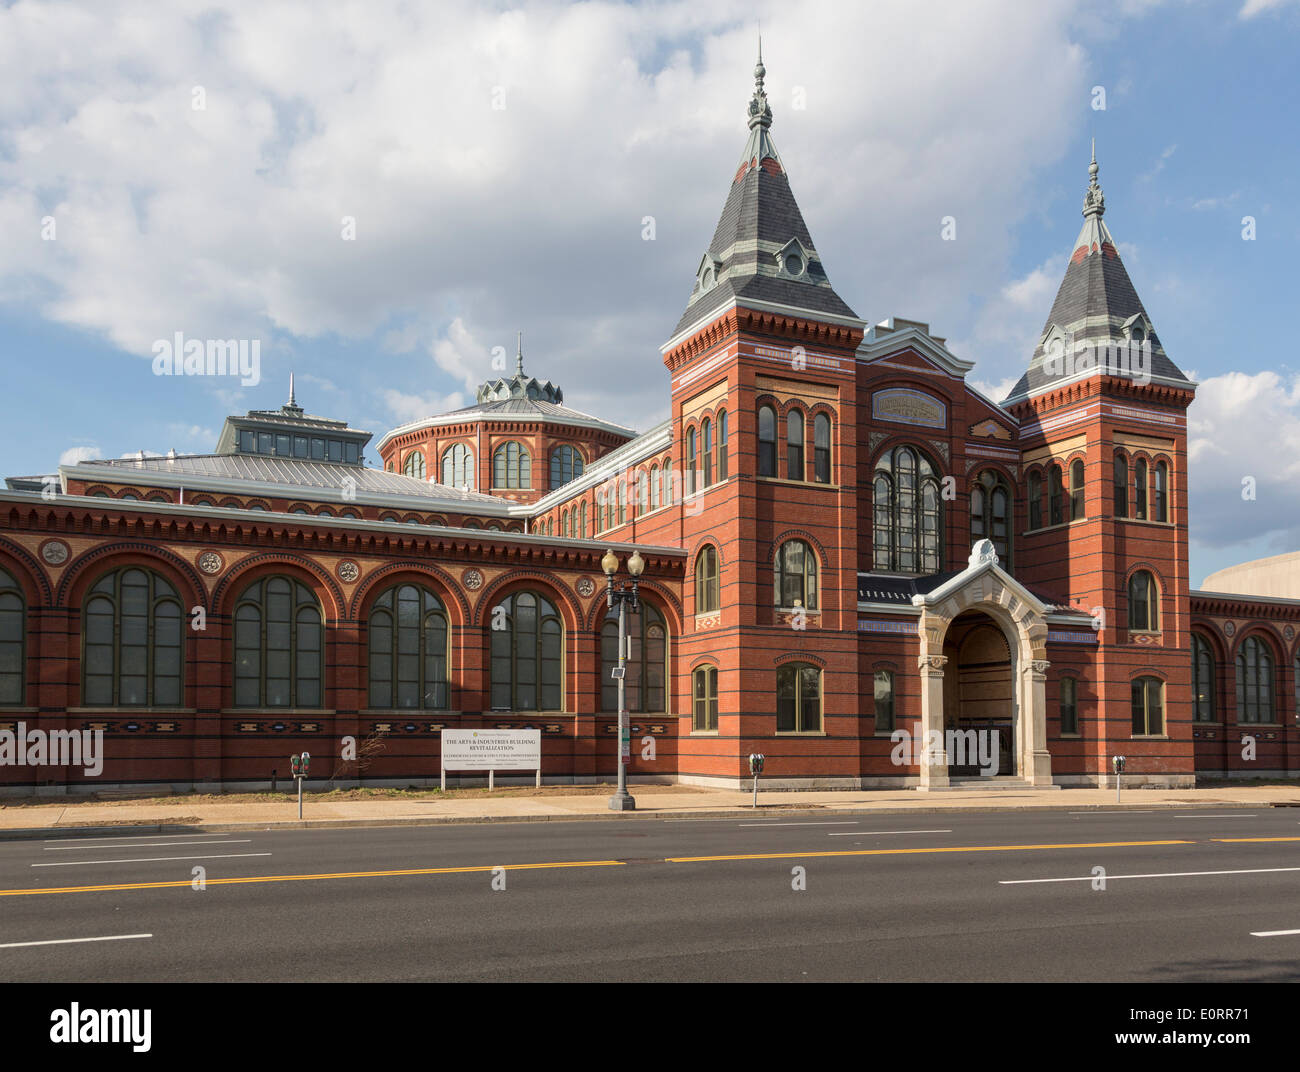 Edificio de Artes e Industrias de la Smithsonian Institution en Washington DC, EE.UU. Foto de stock